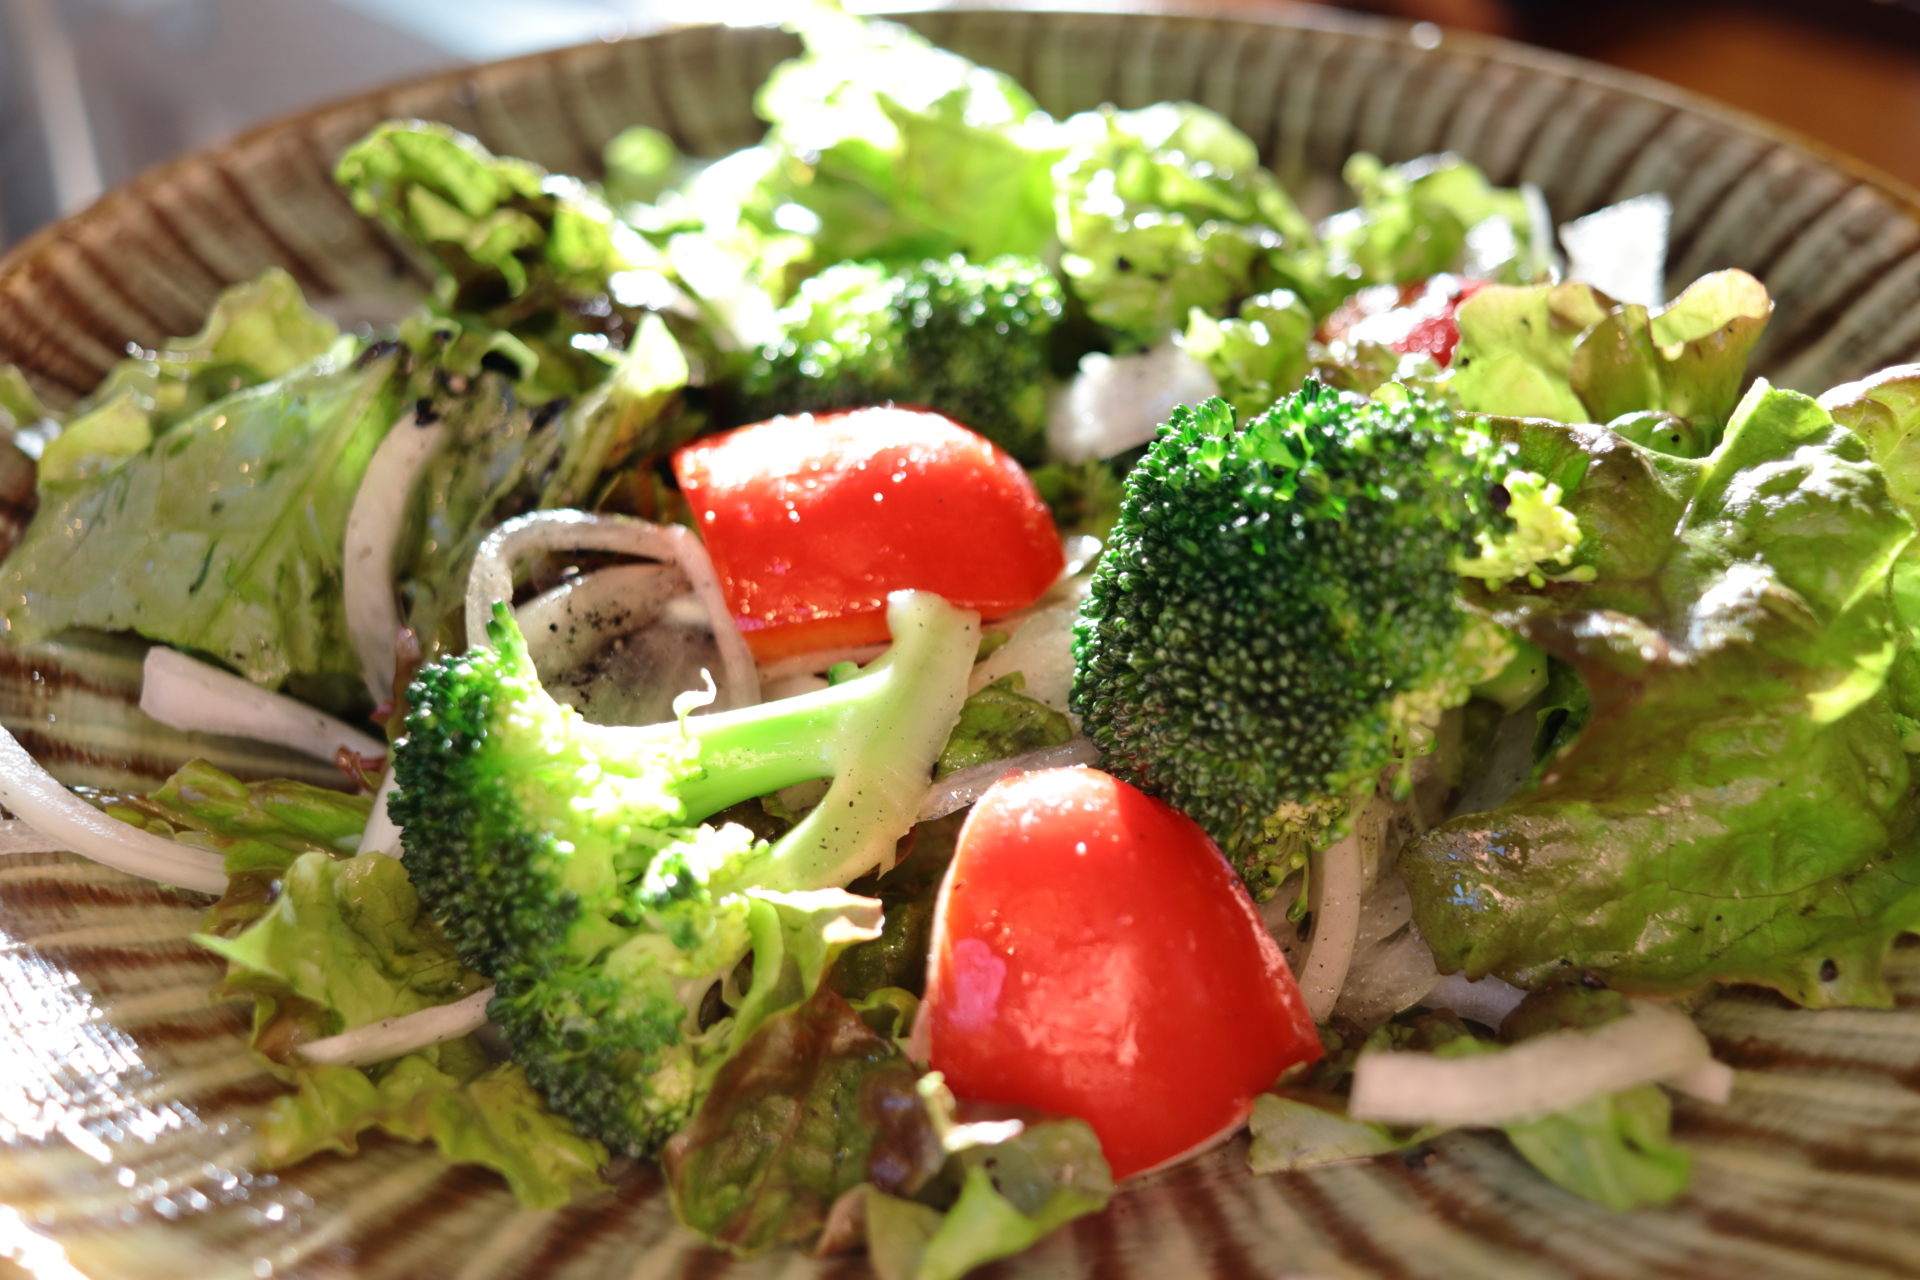 ダイエット用サラダに向いている野菜 不向きな野菜と効果一覧 もっと 健康 ダイエット